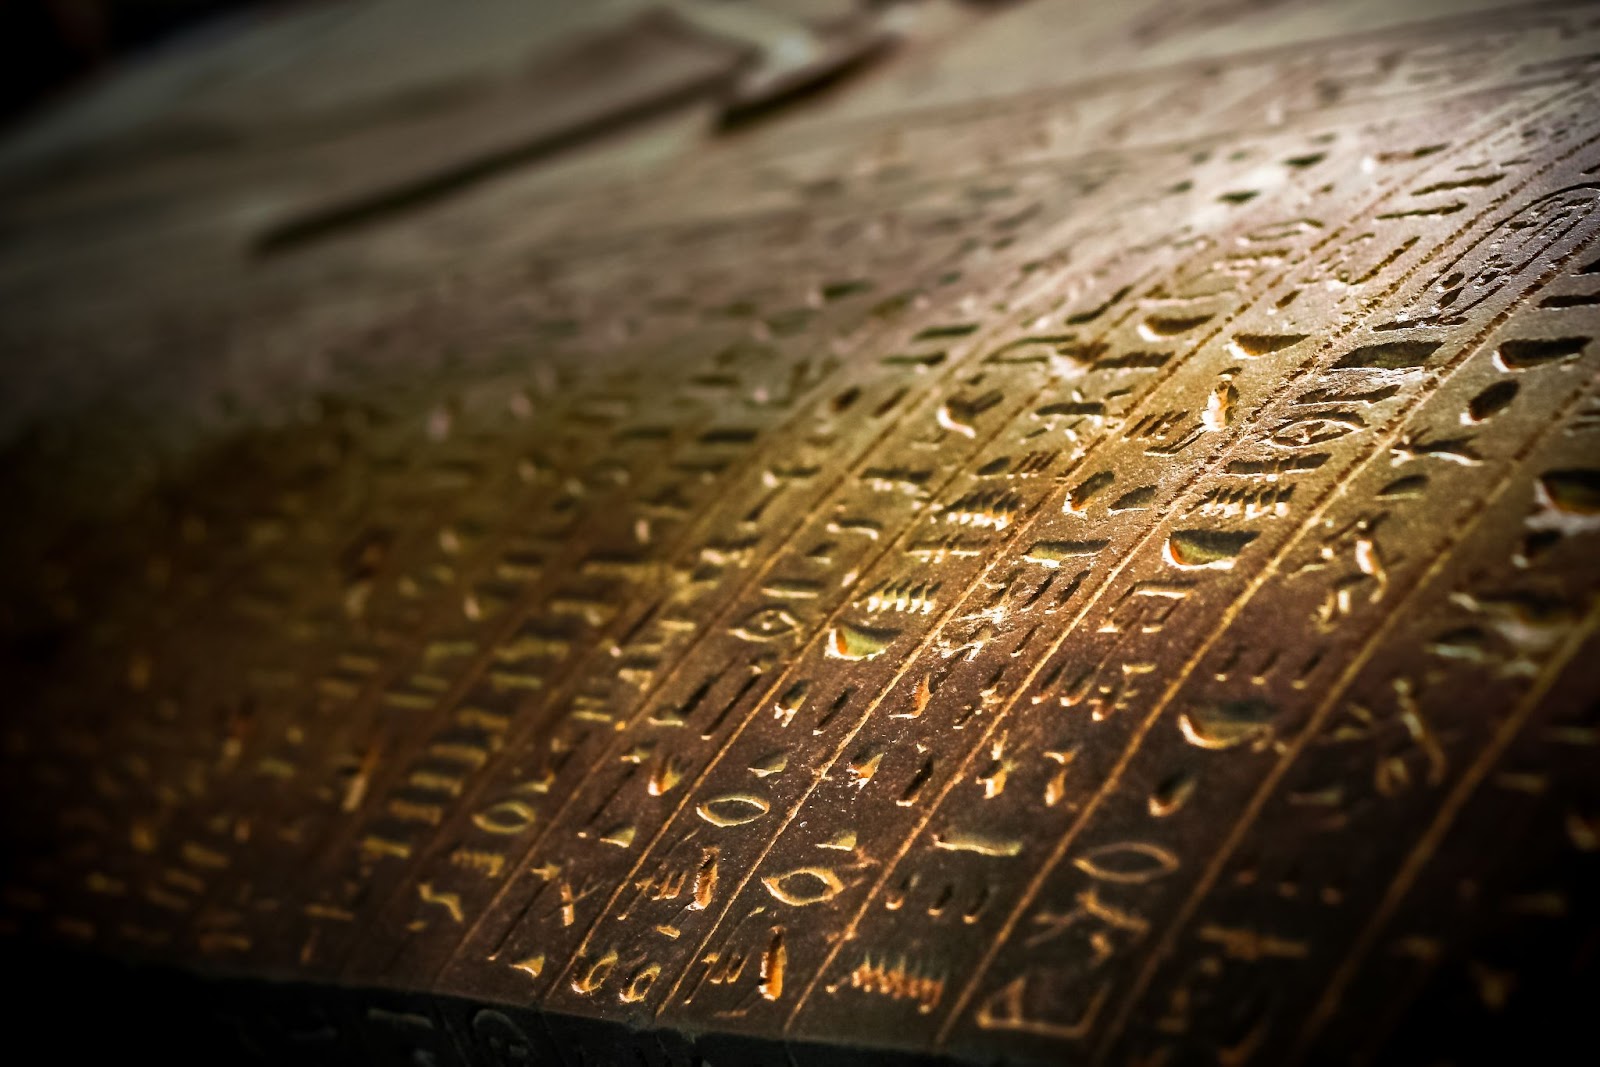 Símbolos da língua egípcia esculpidos no sarcófago da múmia.